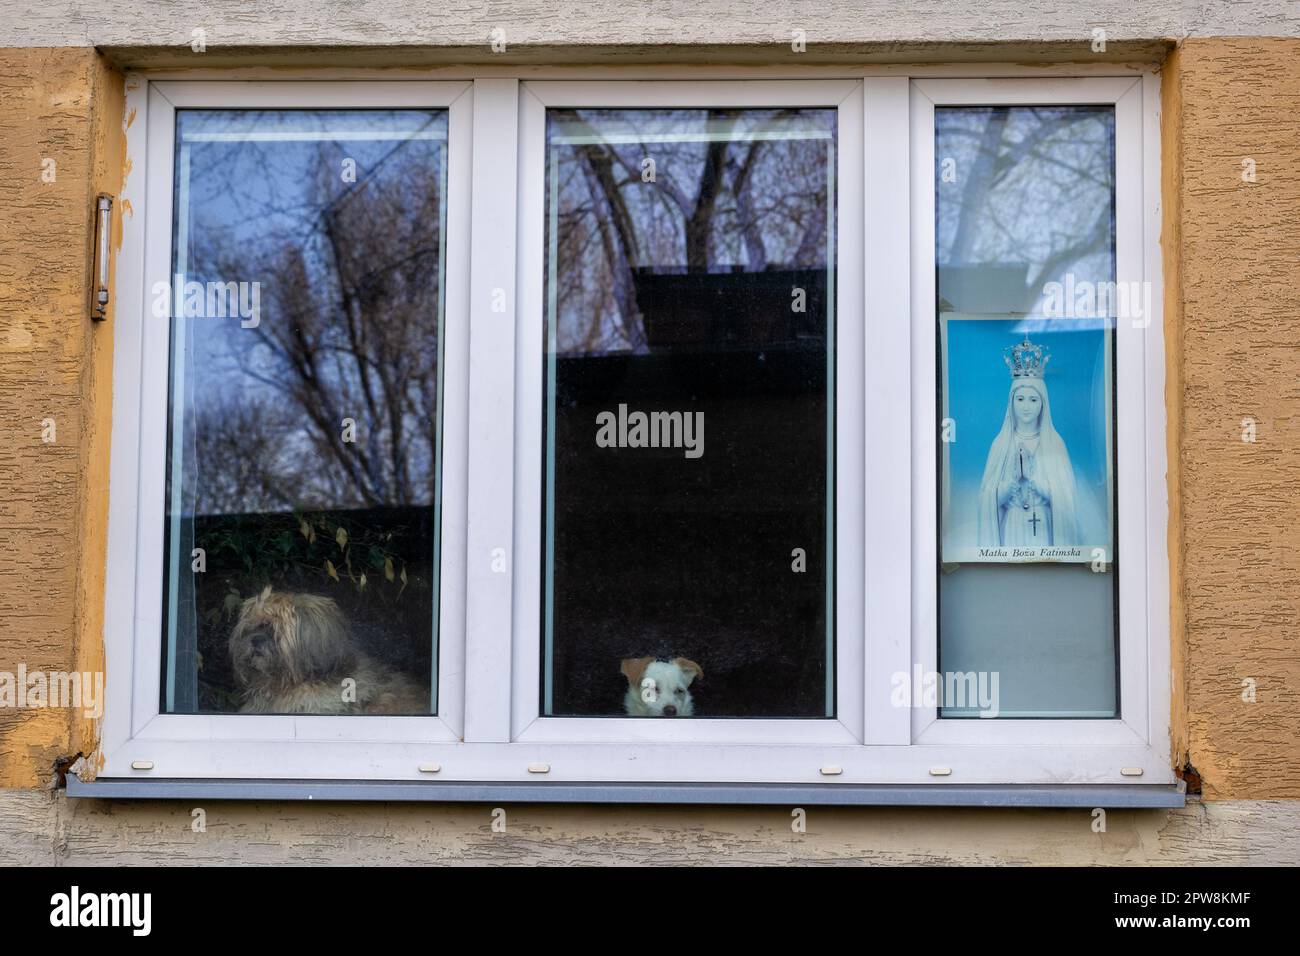 Unsere Lady von Fatima und zwei Hunde im Fenster, Bild der Heiligen Jungfrau Maria und zwei pelzige Freunde, die durch das Glas schauen, Straßenfotografie in W. Stockfoto